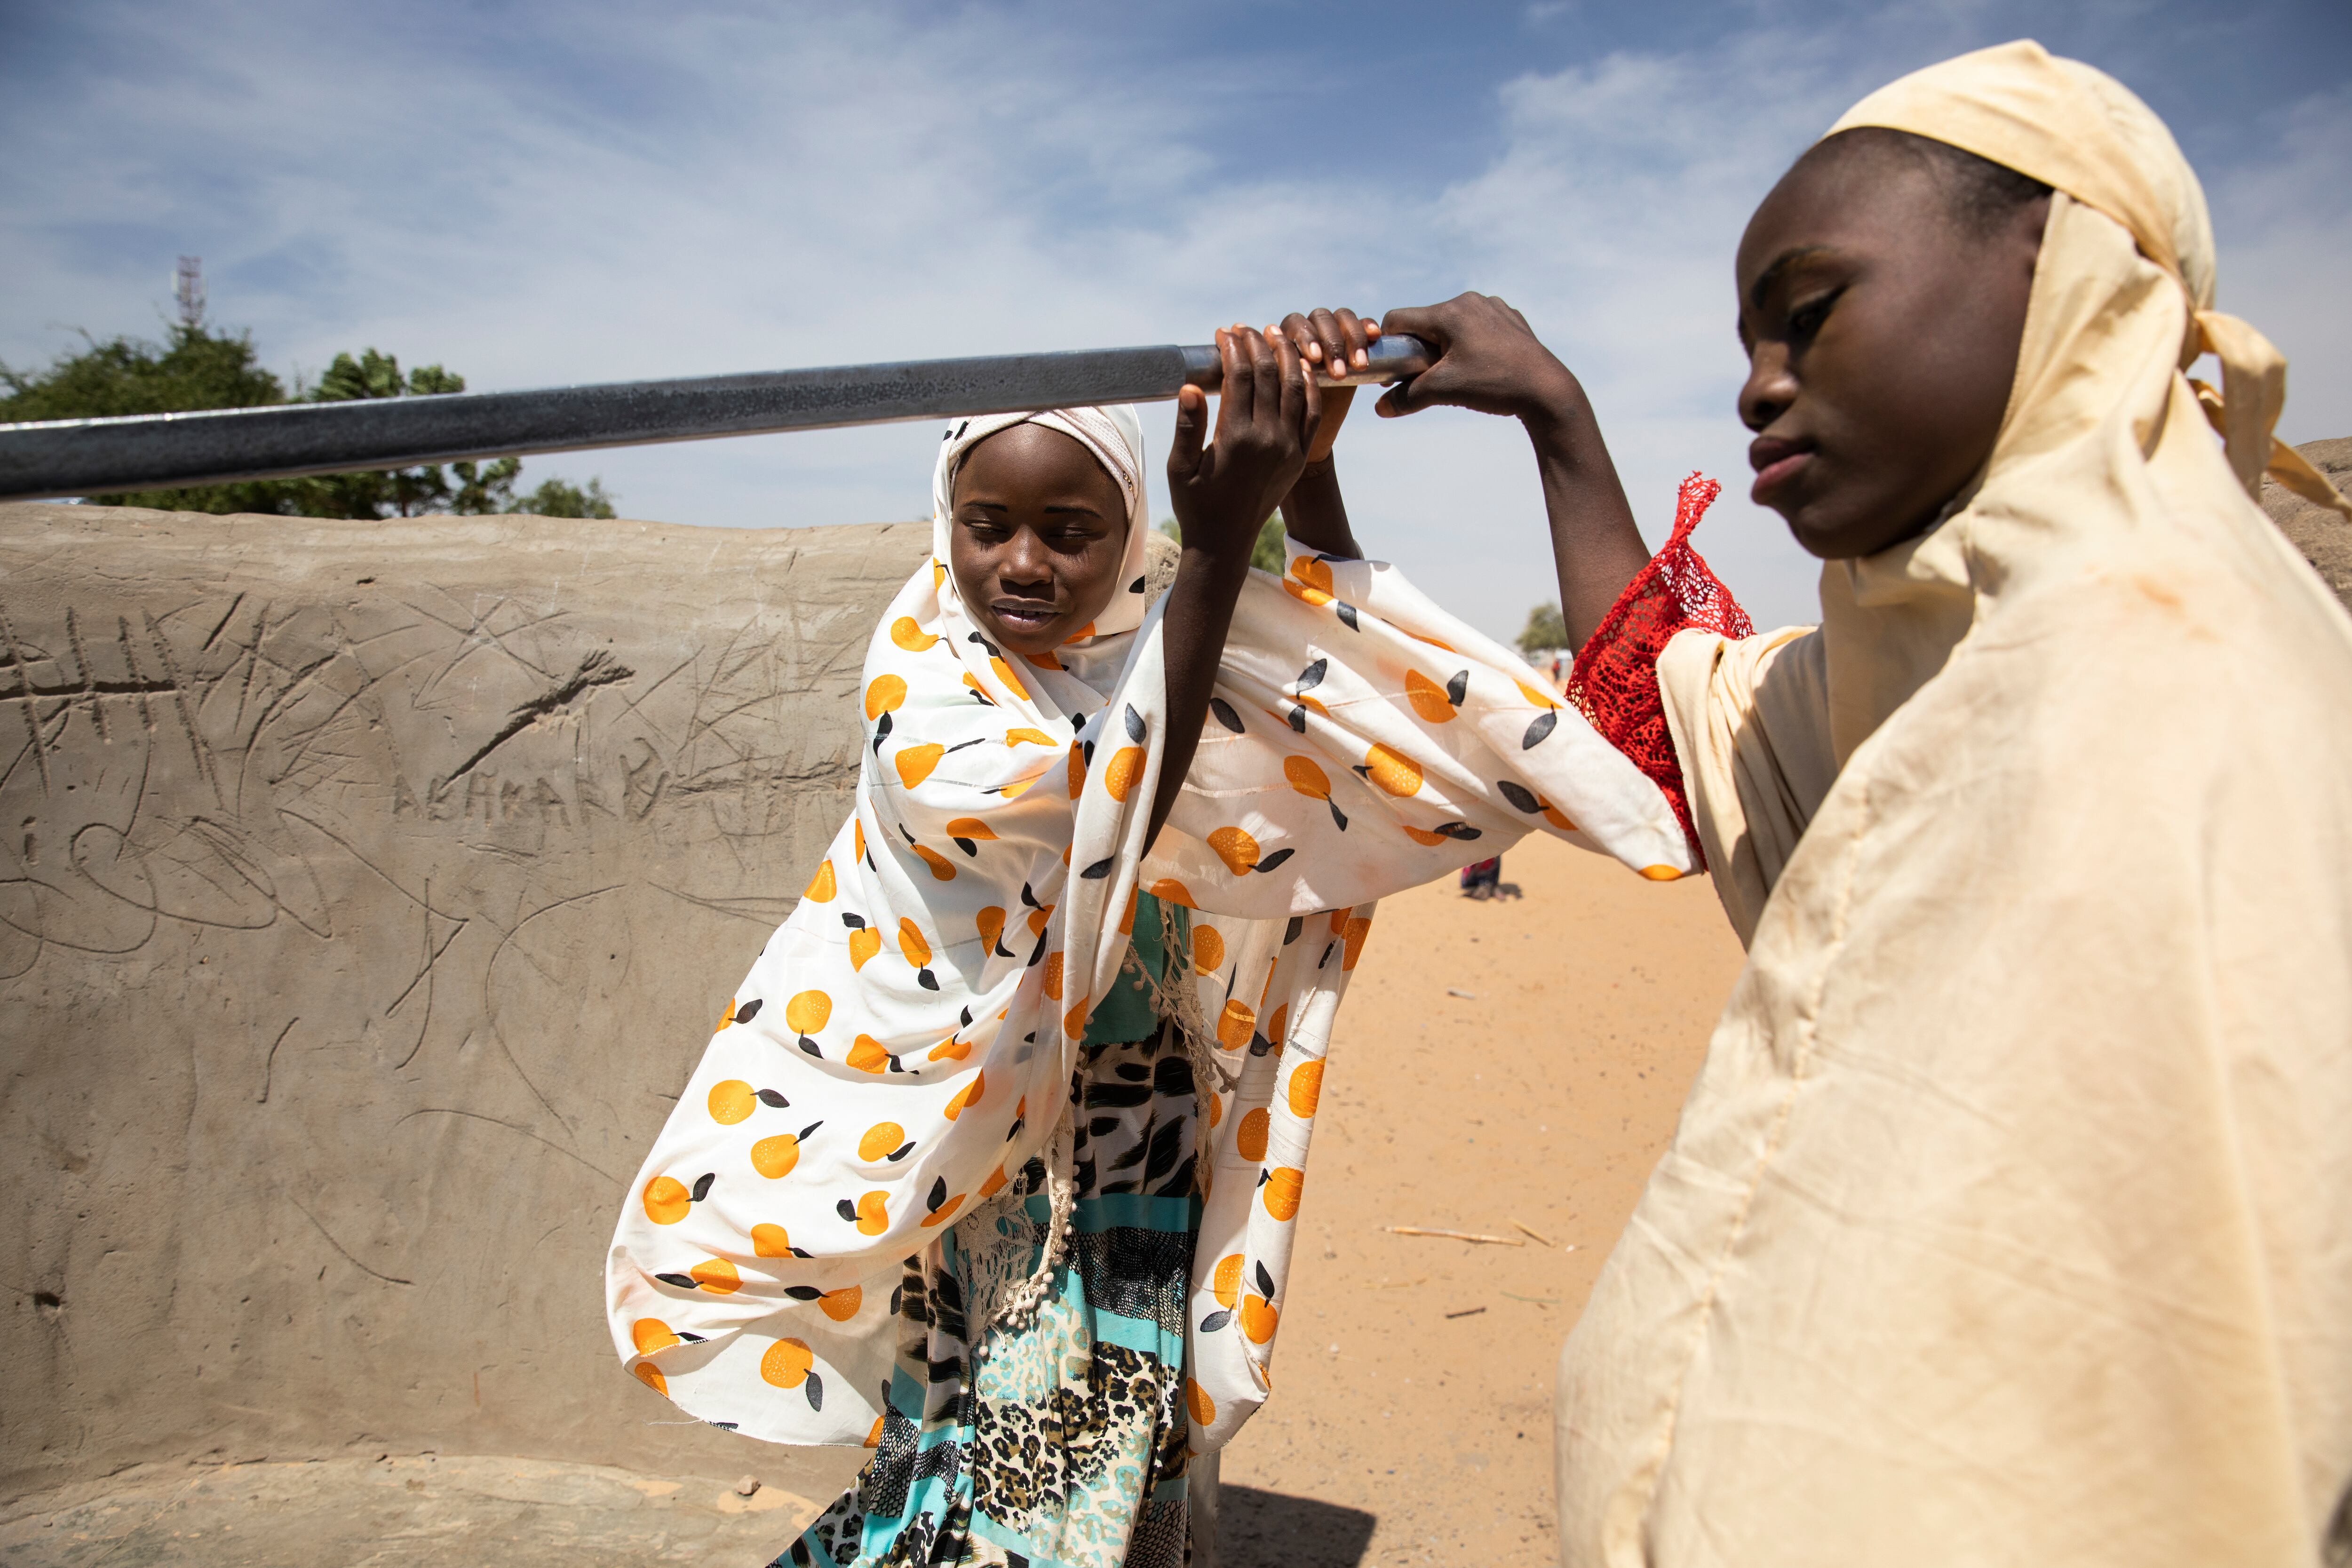 Roukaya y su mejor amiga, Sadya, bombean para obtener agua de un pozo cercano a sus viviendas. A pesar del déficit de nutrientes de Roukaya, esta saca energías a diario para llenar y cargar pesados cubos de agua dos veces al día.